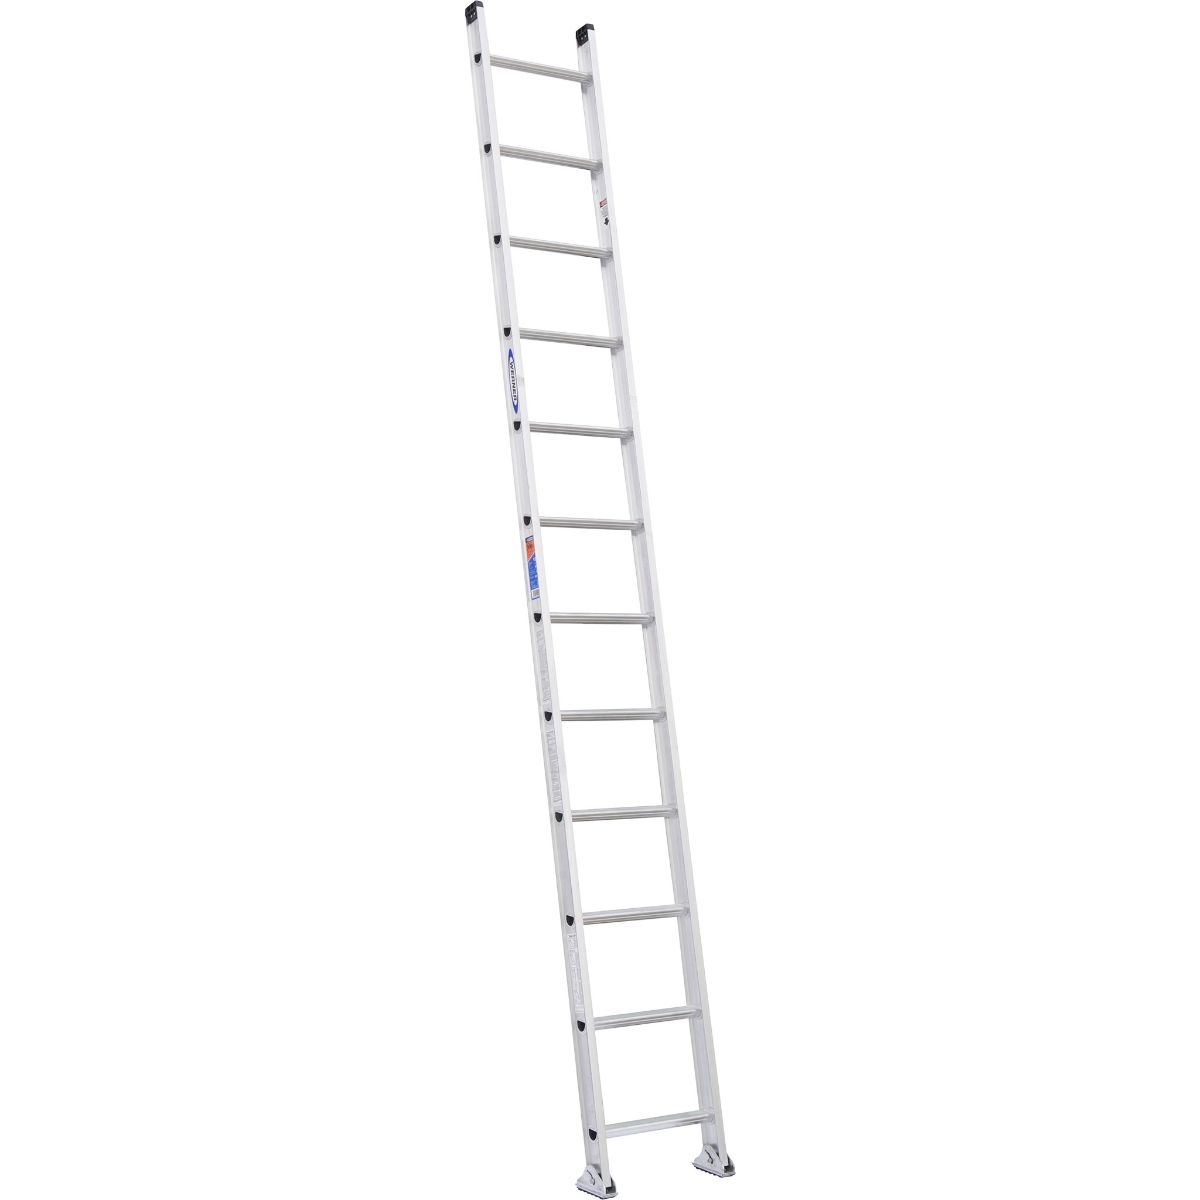 D1512-1 12 Ft. Type Ia Aluminum D-rung Straight Ladder